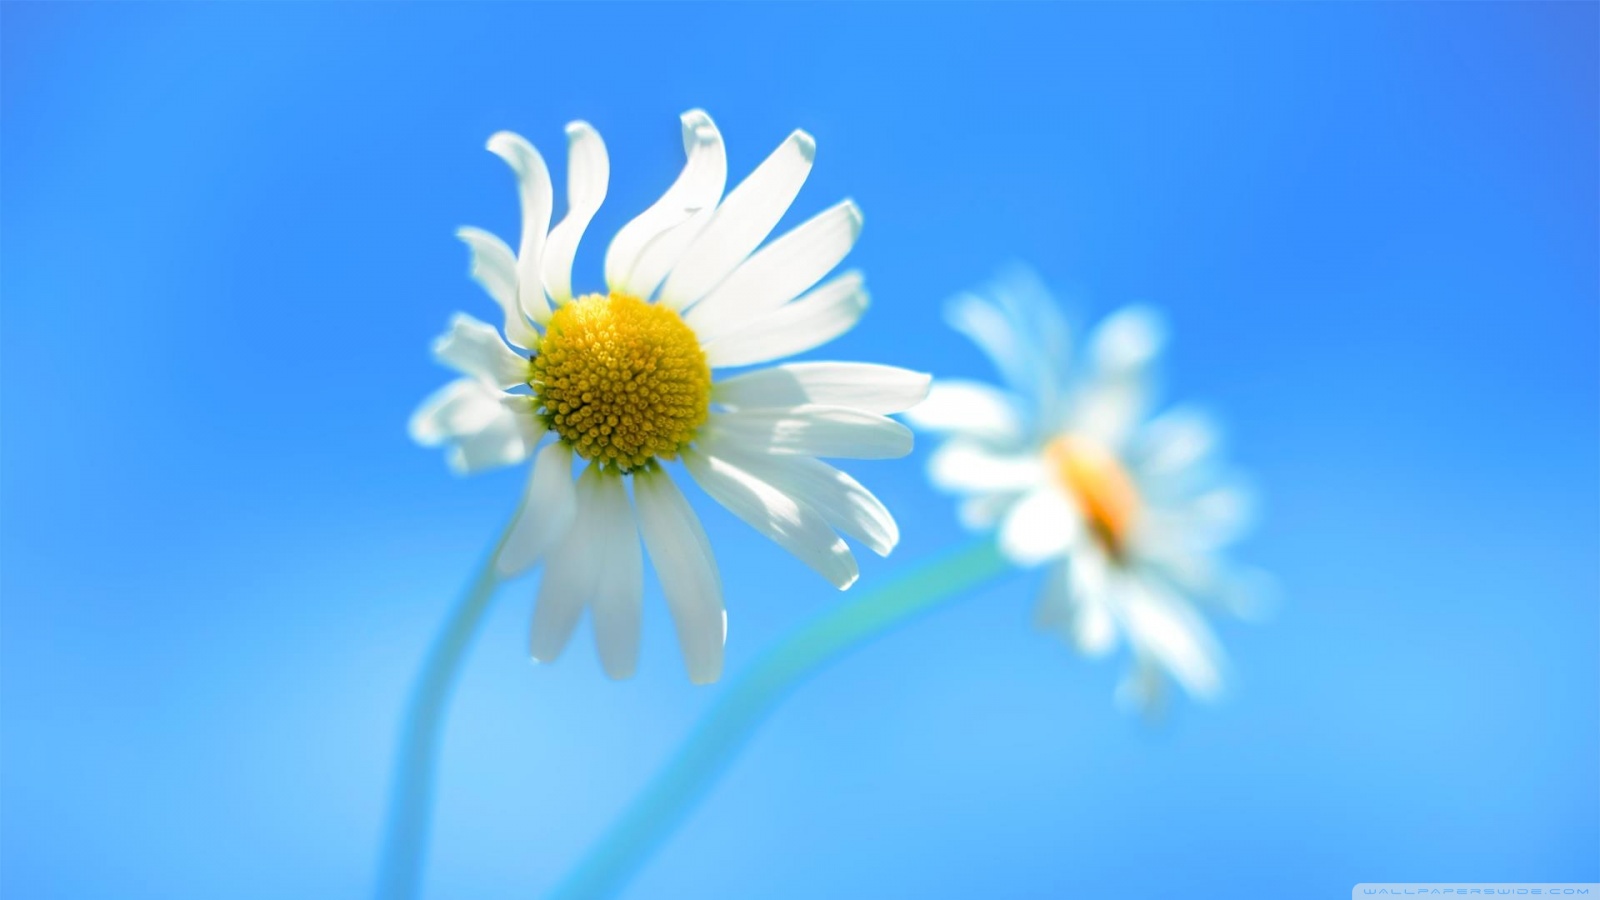 Hình nền mặc định của Windows 8 là một bức tranh tuyệt đẹp với cảnh đồng hoa cúc và núi xanh. Nếu bạn muốn nâng cao sự tinh tế và hiện đại cho máy tính, hãy xem hình ảnh liên quan đến từ khóa \